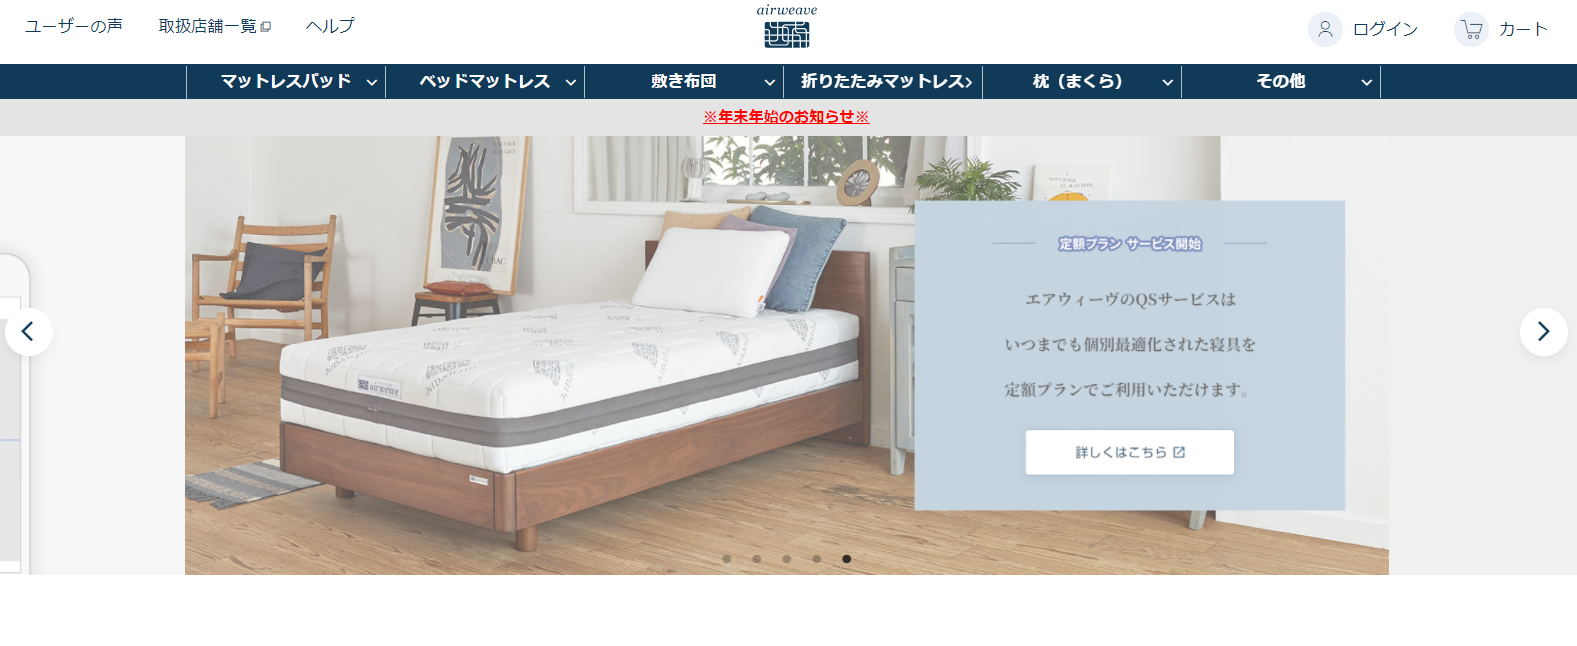 エアウィーヴ」について知る | 日本最大級のホテル旅館情報サイト